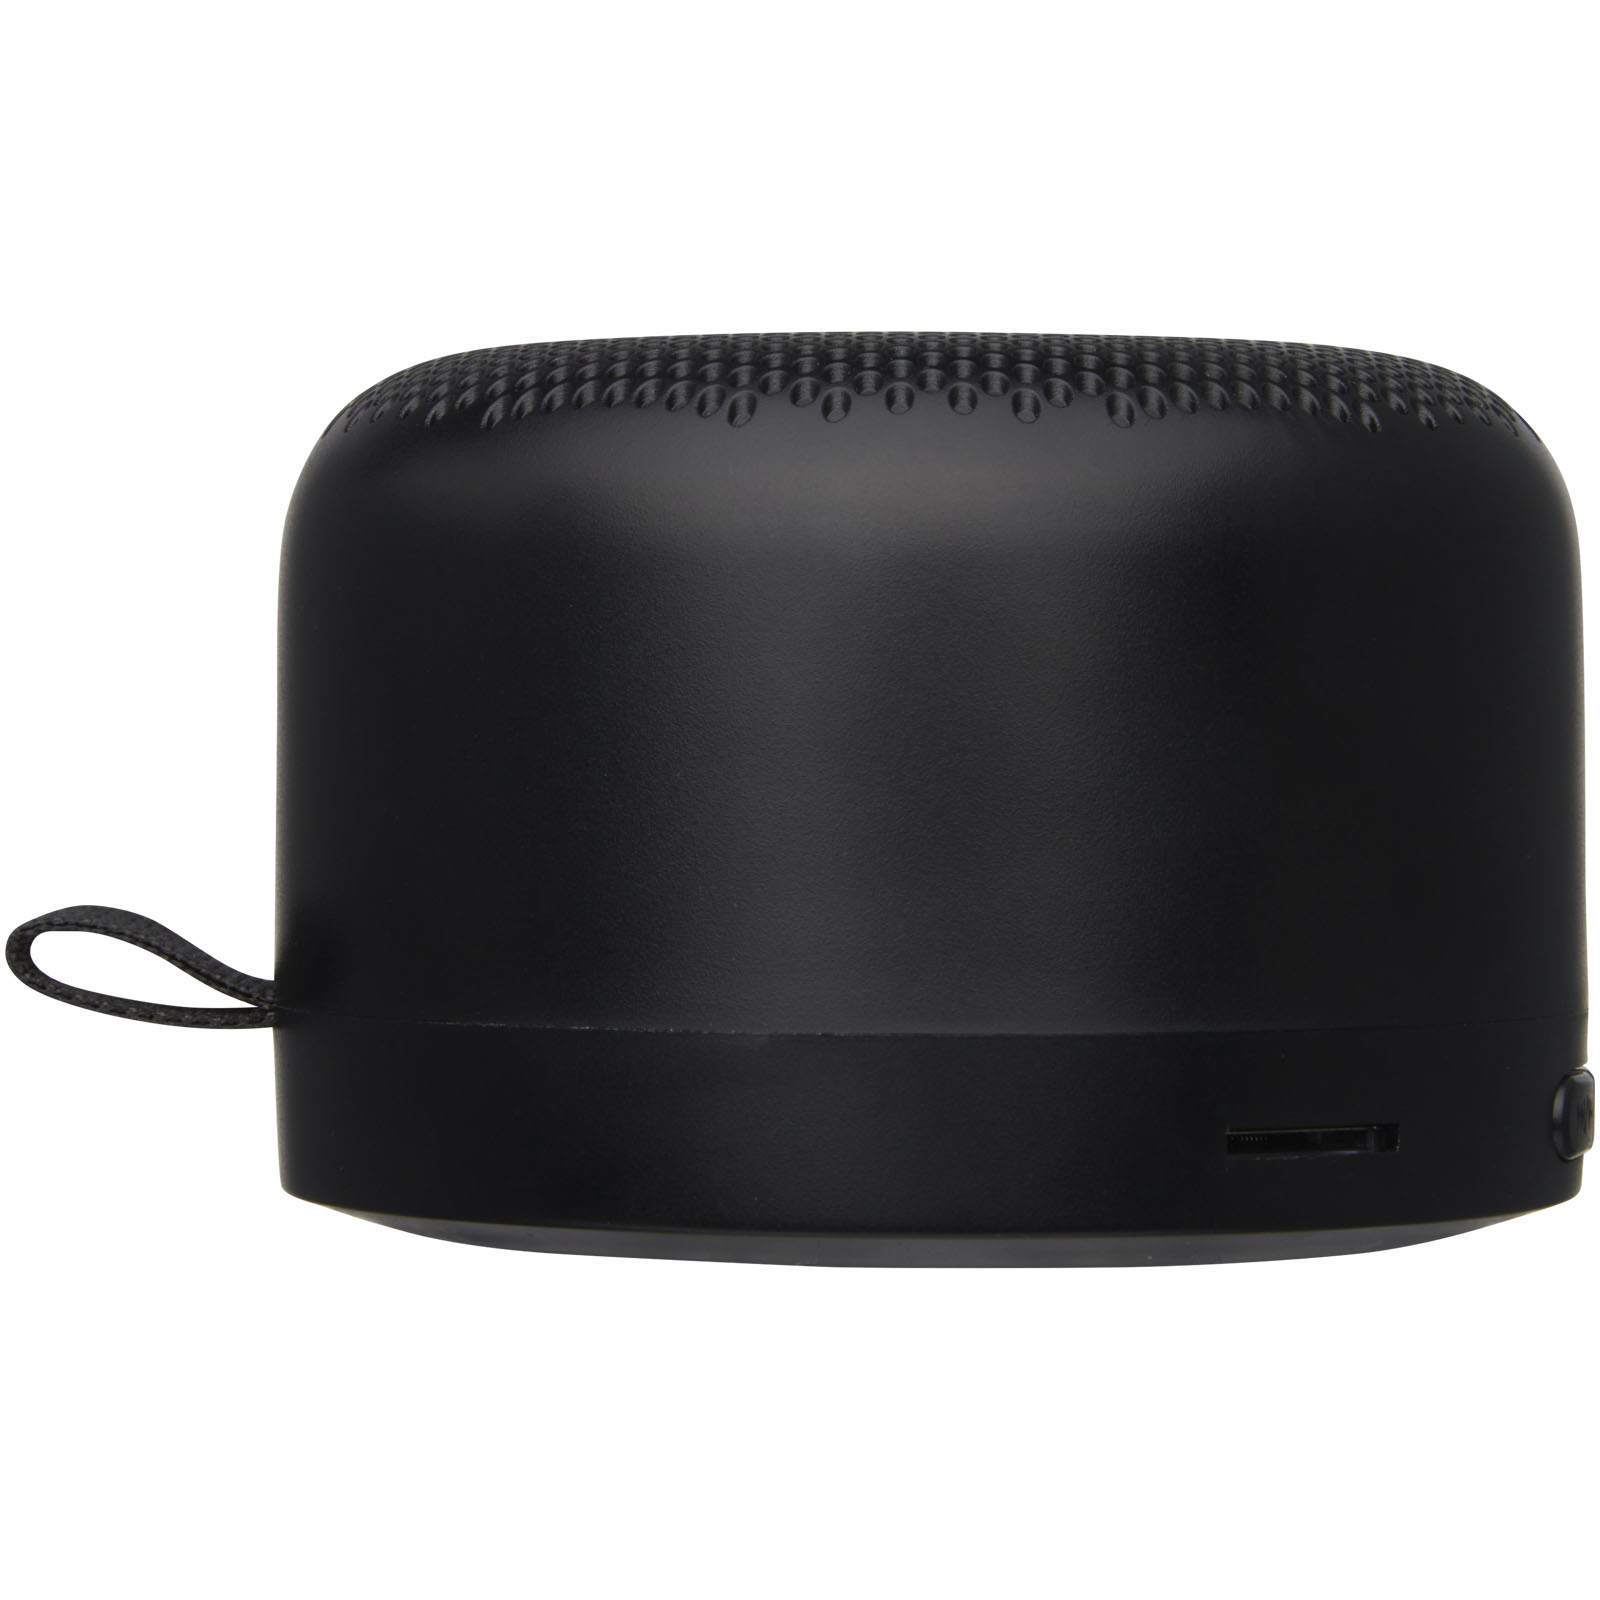 Advertising Speakers - Loop 5W recycled plastic Bluetooth speaker - 3